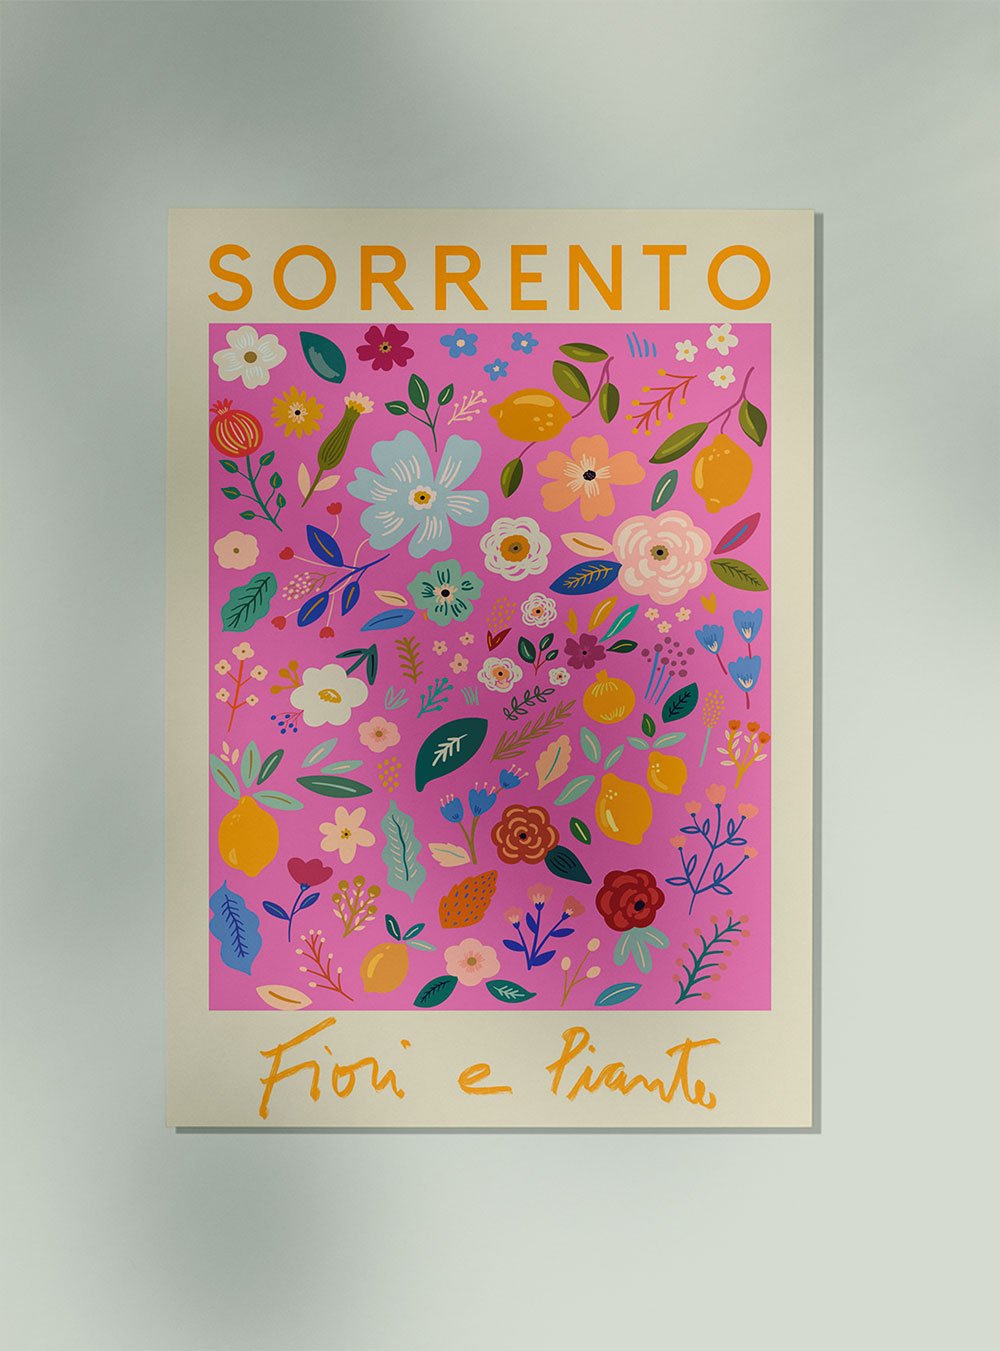 Sorrento Flower Market Poster